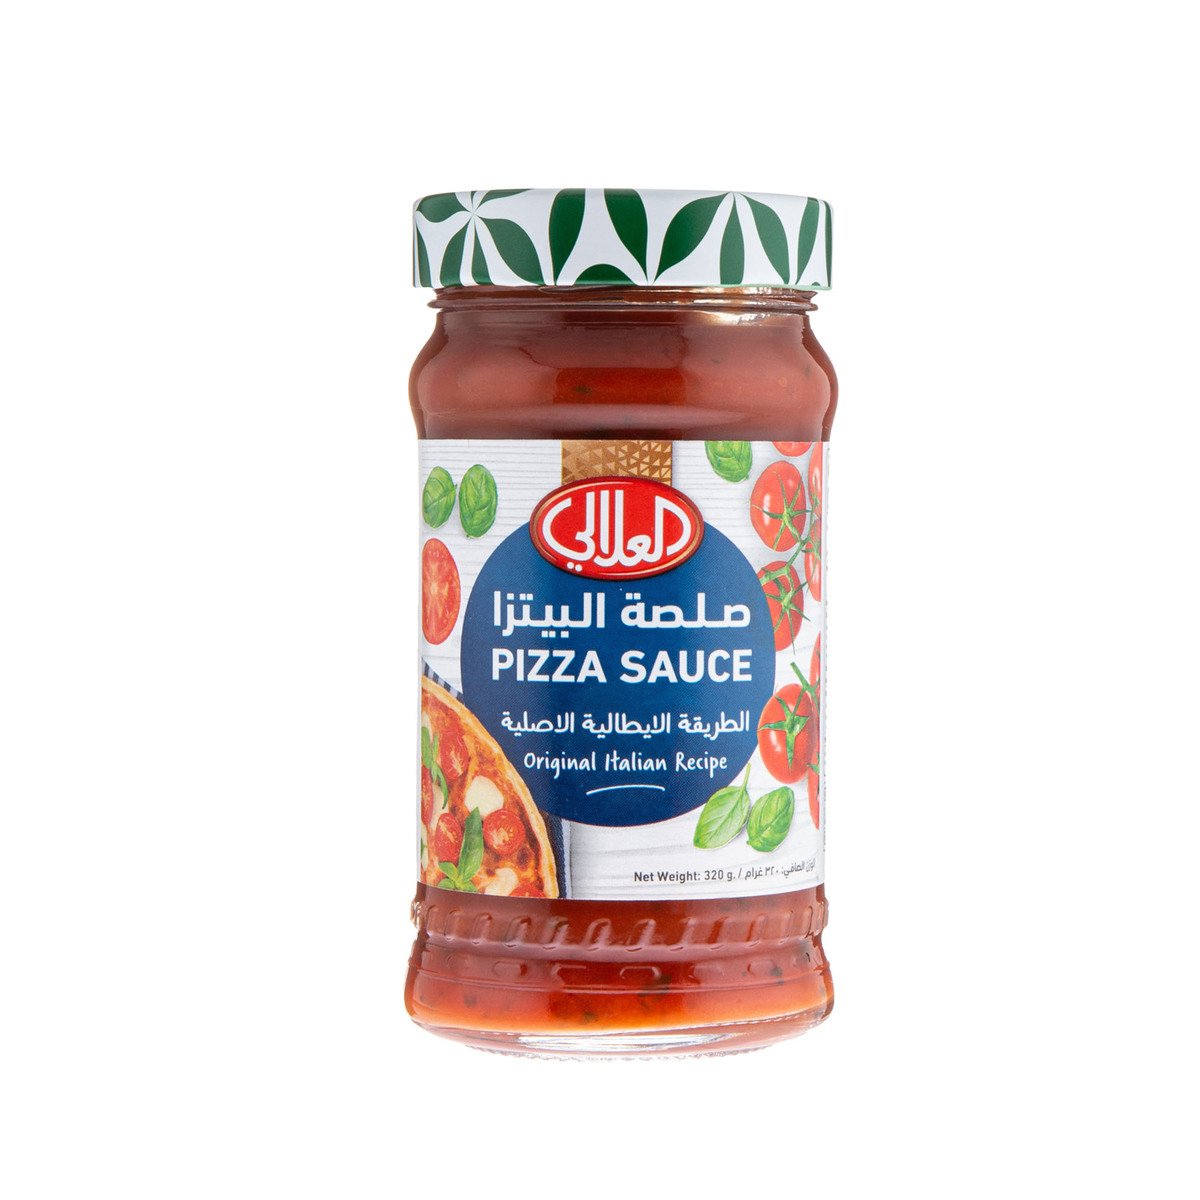 اشتري قم بشراء العلالي صلصة البيتزا ٣٢٠ جم Online at Best Price من الموقع - من لولو هايبر ماركت Cooking Sauce في السعودية